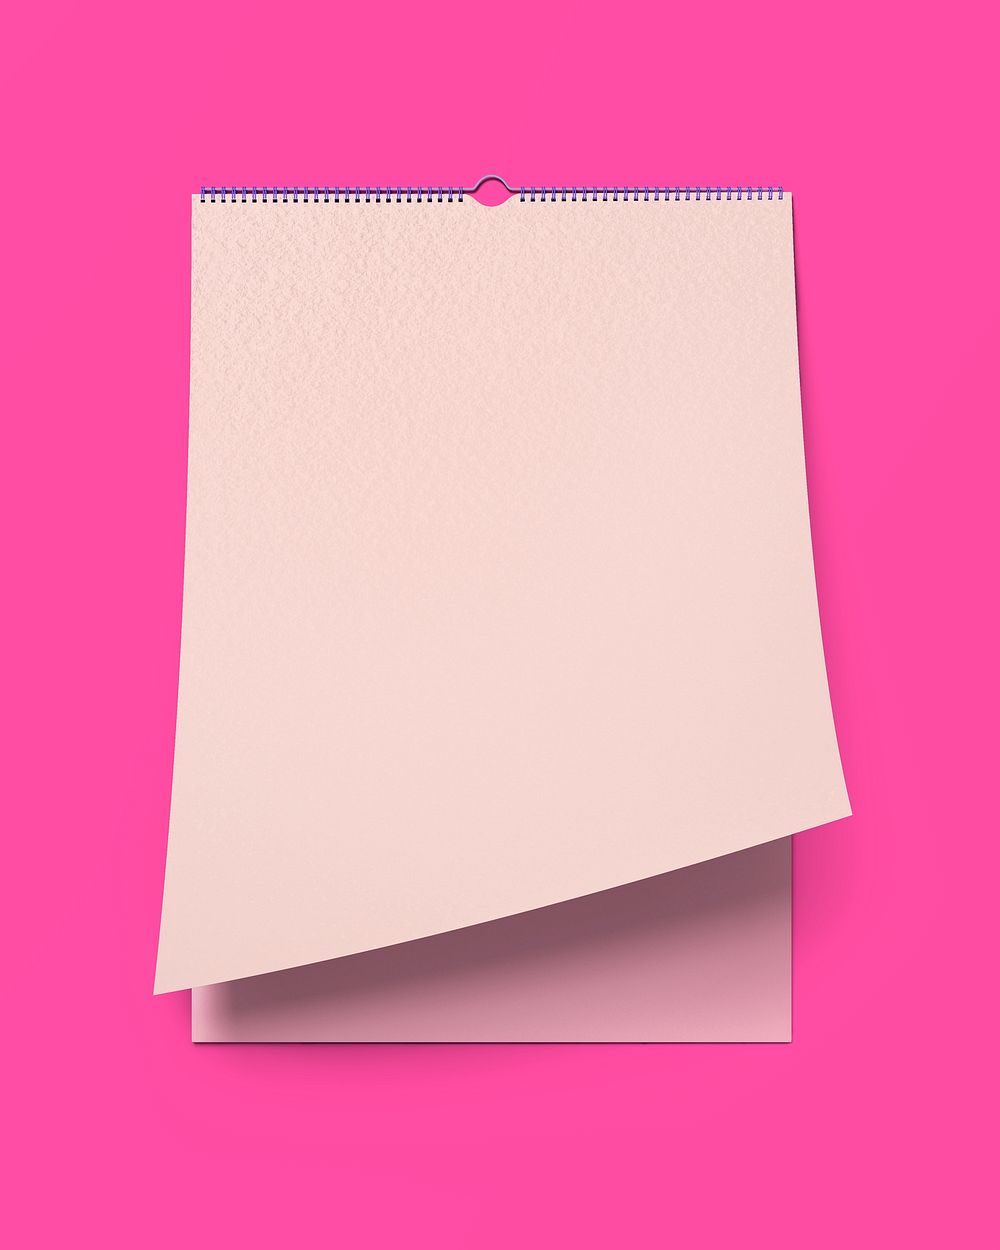 Wall calendar, pink 3D rendering design